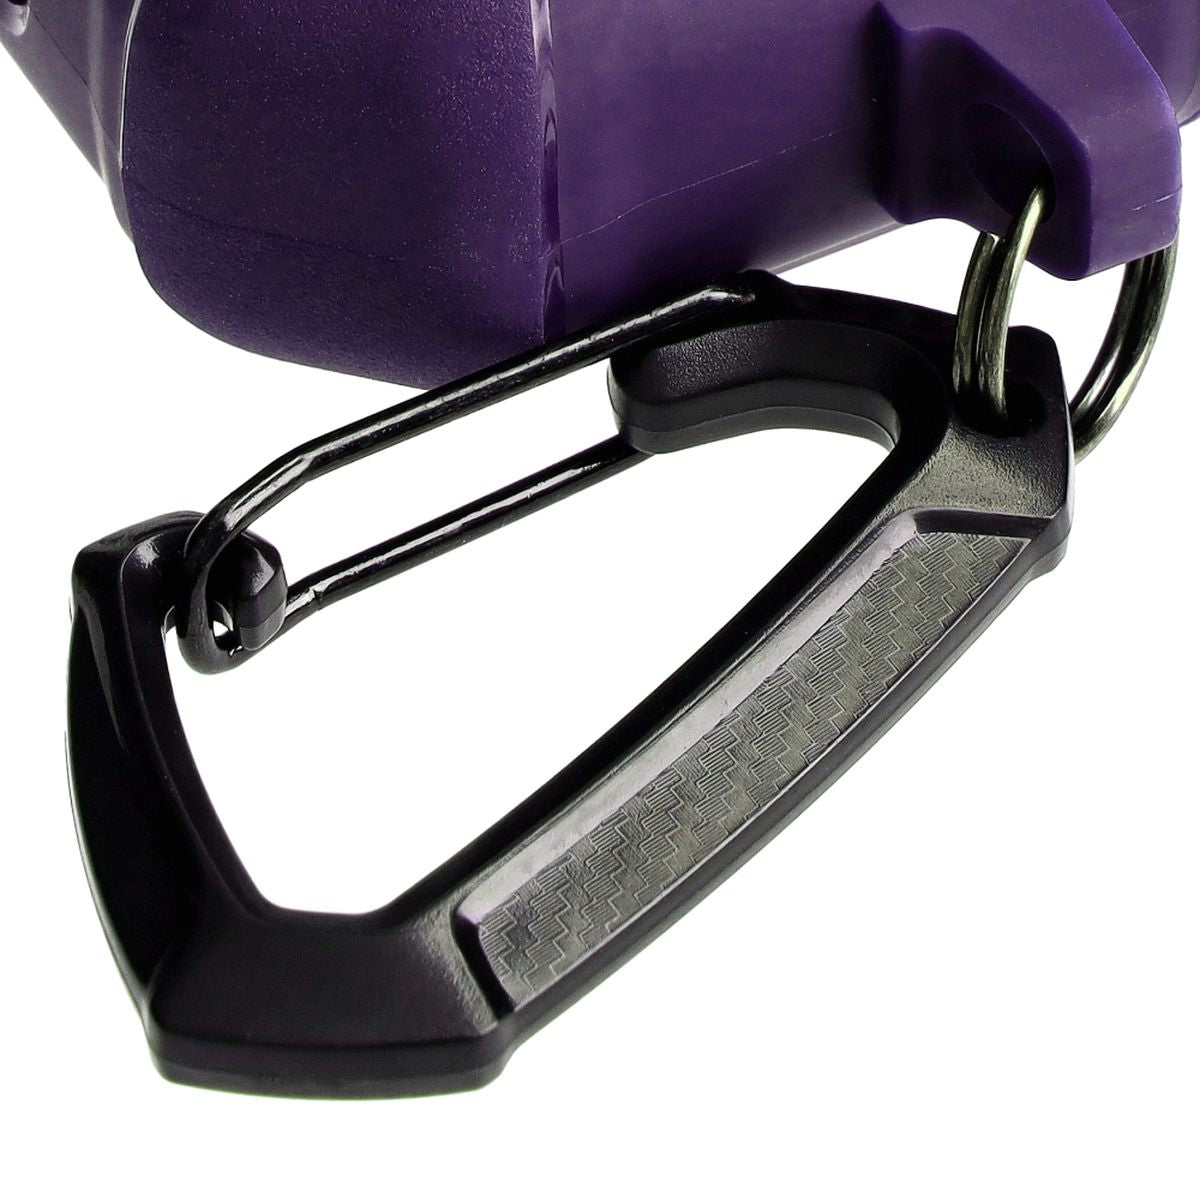 Schutzhülle für Apple Airpods 3, Bizon Case Headphone Armor, Violett